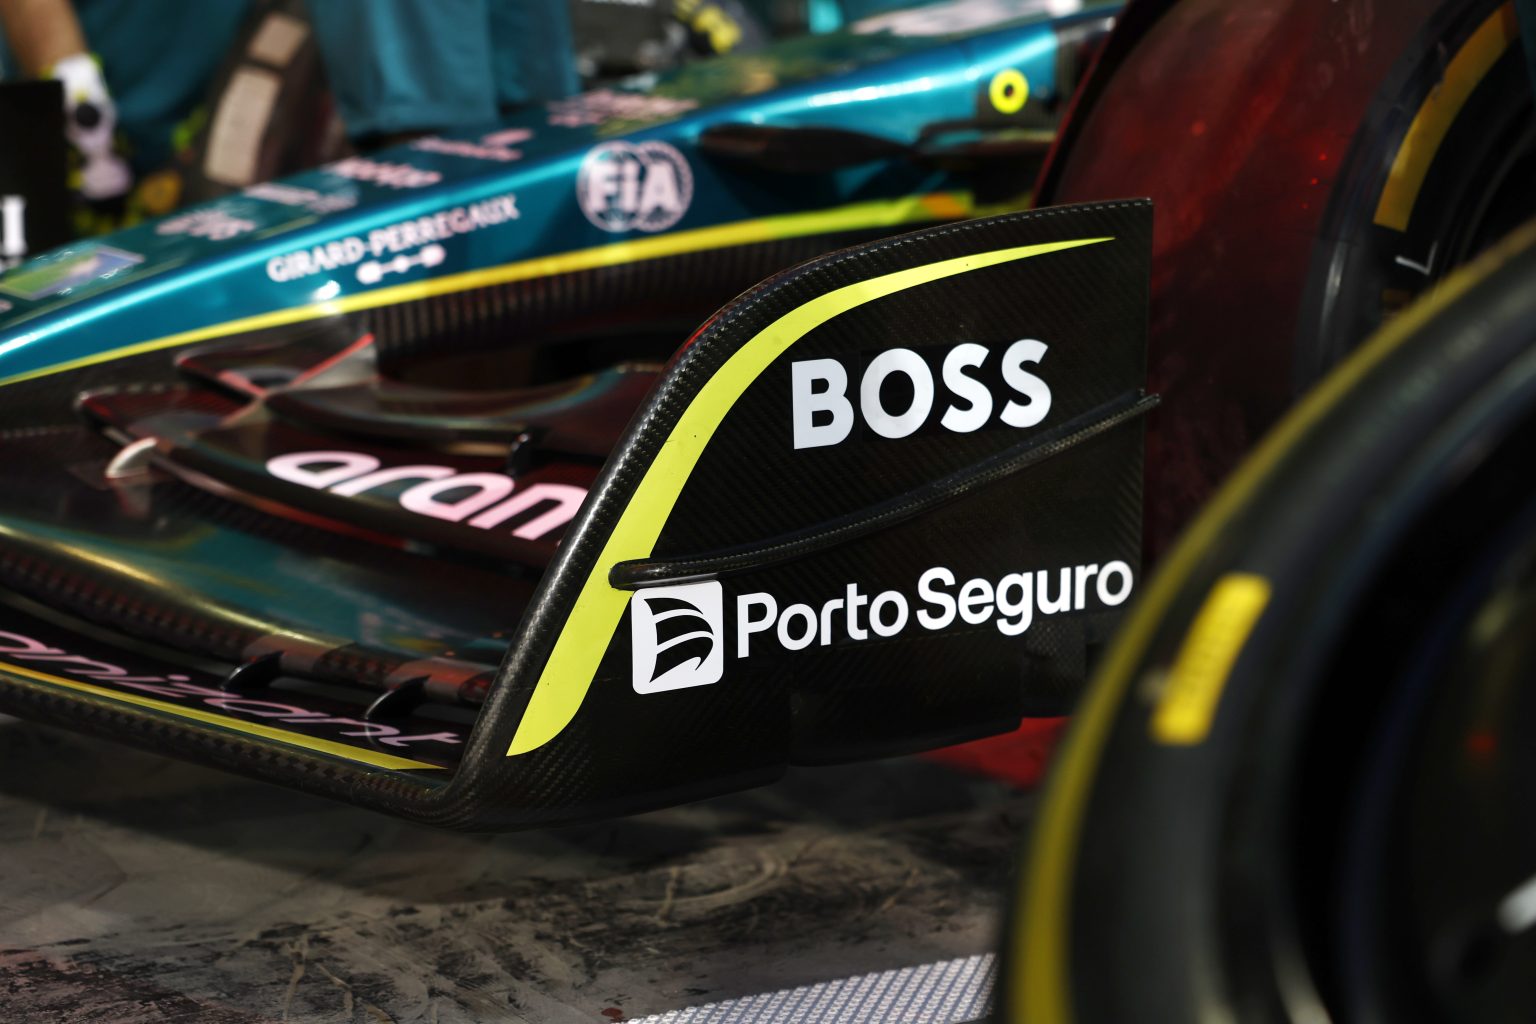 Felipe Drugovich: quem é o jovem brasileiro que é o piloto reserva da Aston  Martin em 2023 - Blog da Porto Seguro